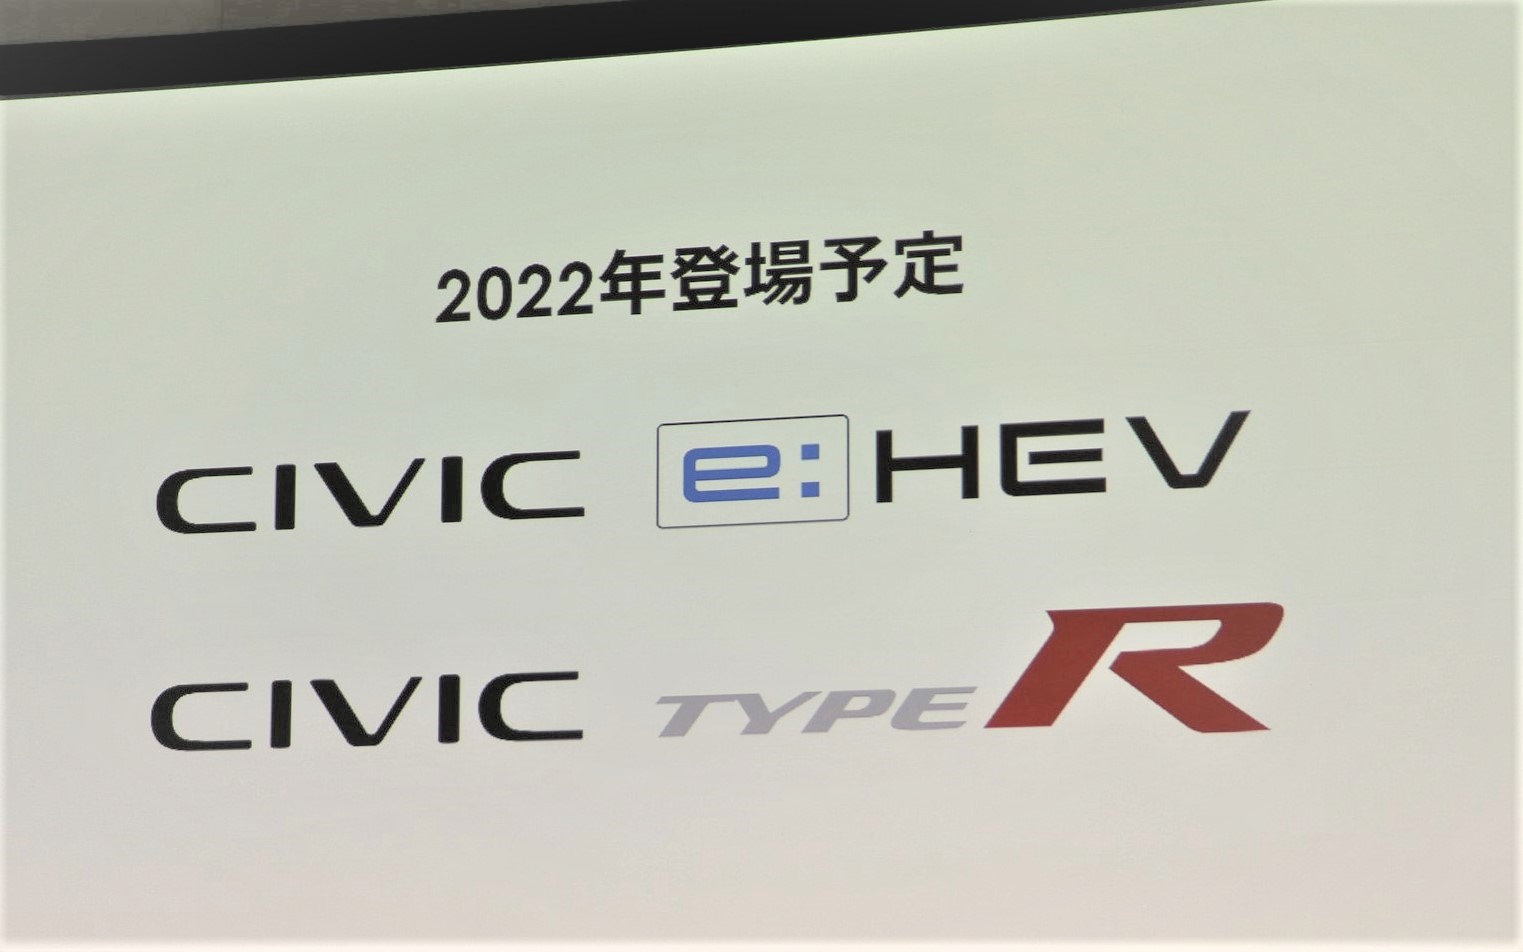 新型 シビック Type R 7代目 22年登場を予告 Car Watch